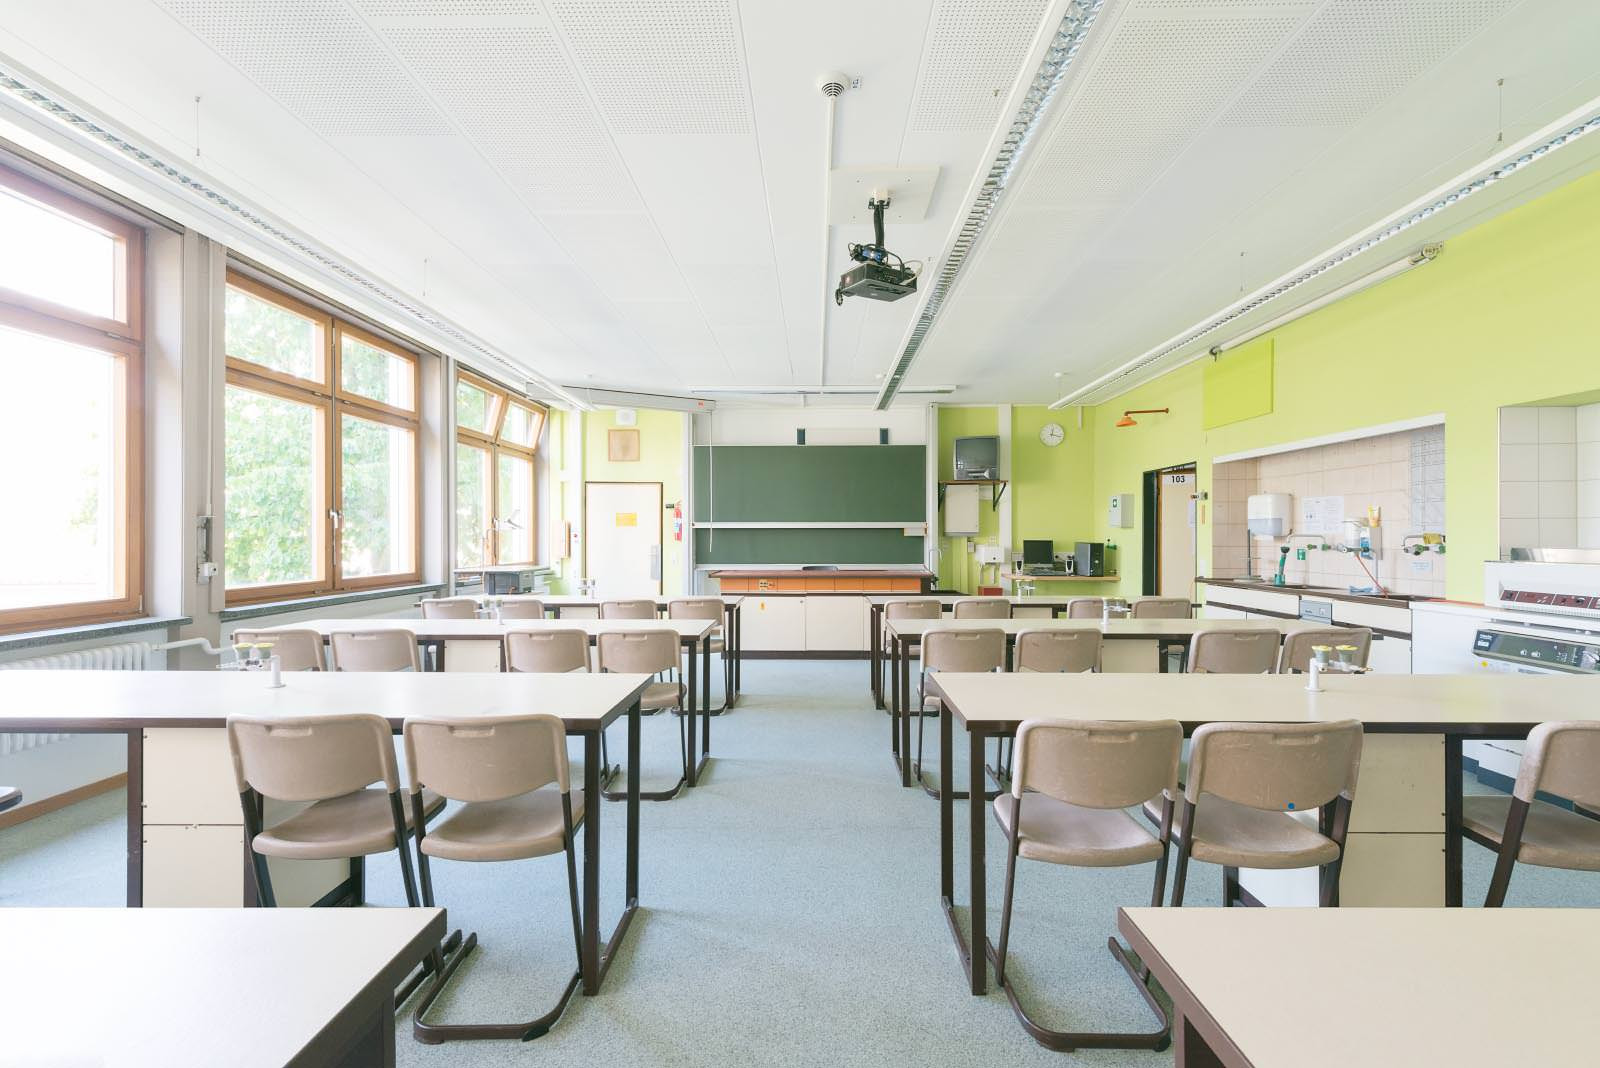 Klassenzimmer mit grüner Wand und Projektor